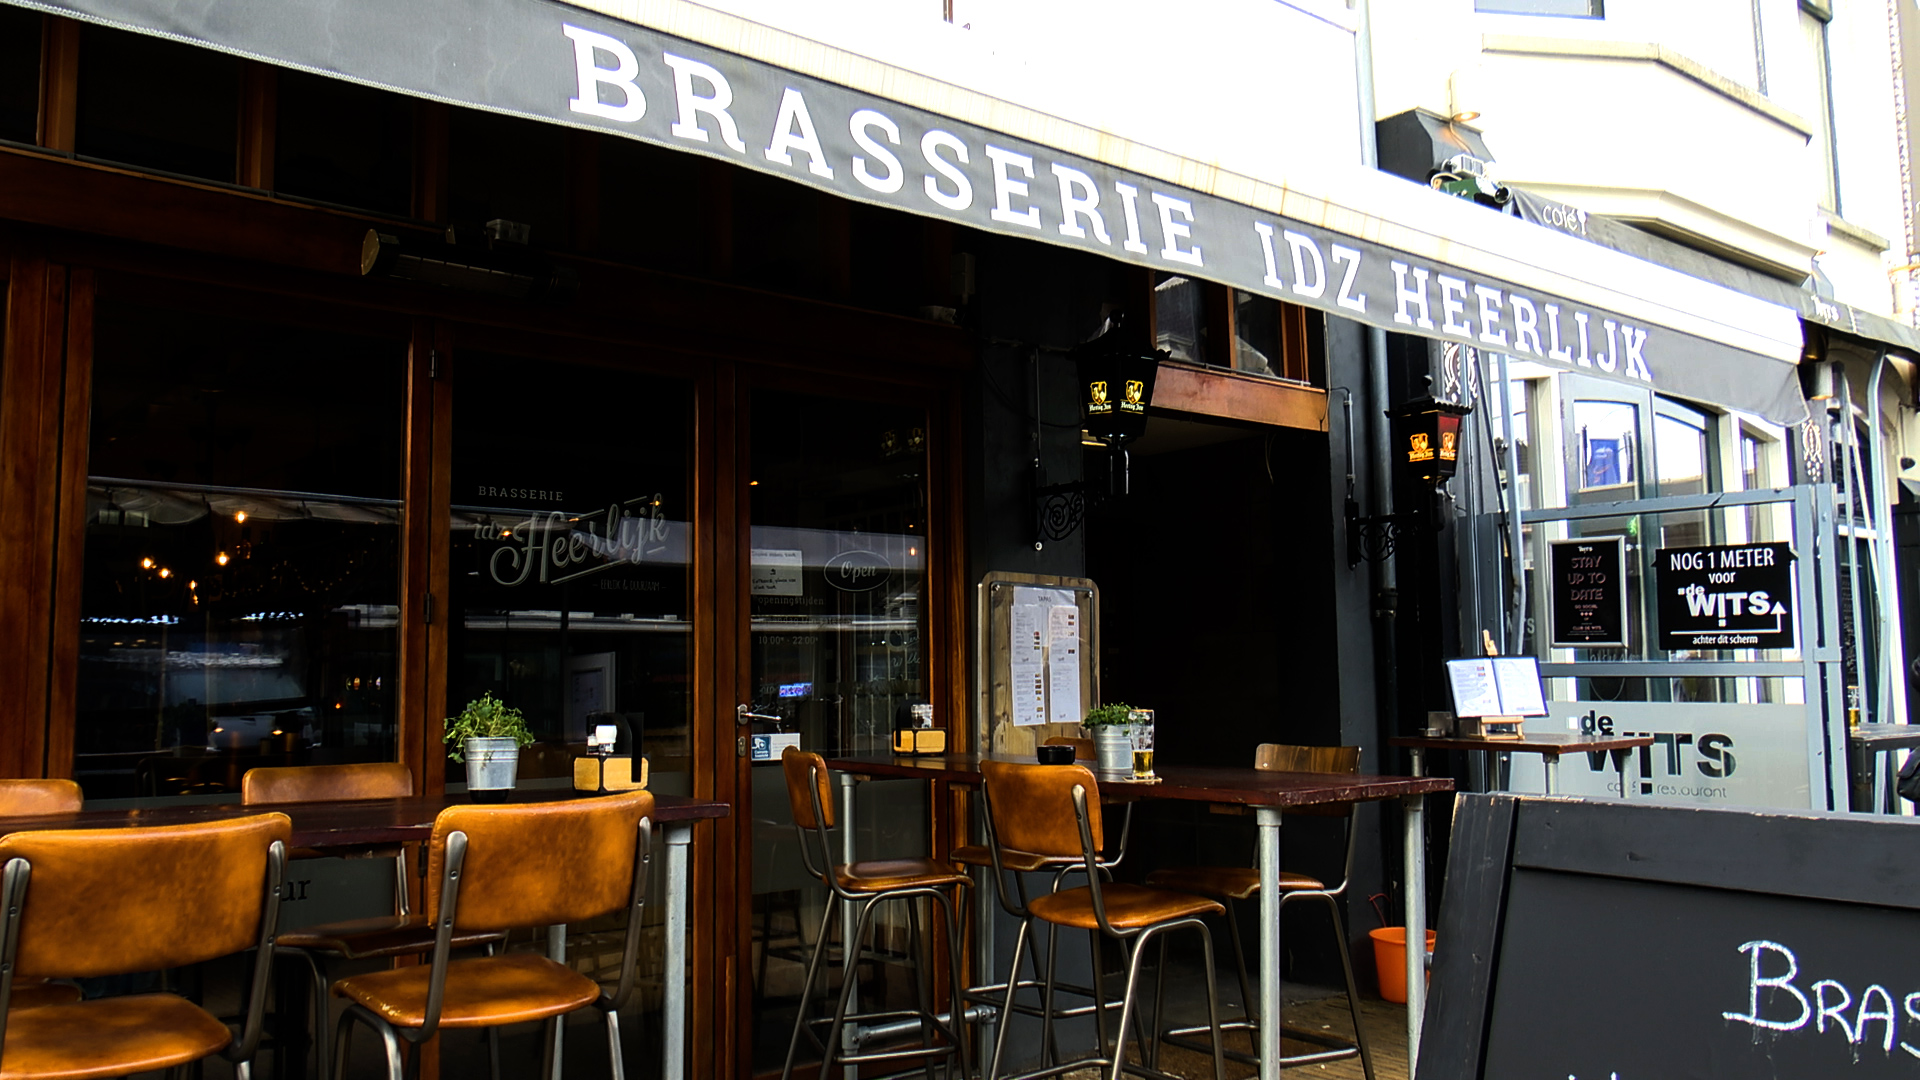 Brasserie Idz Heerlijk in oud Rijswijk